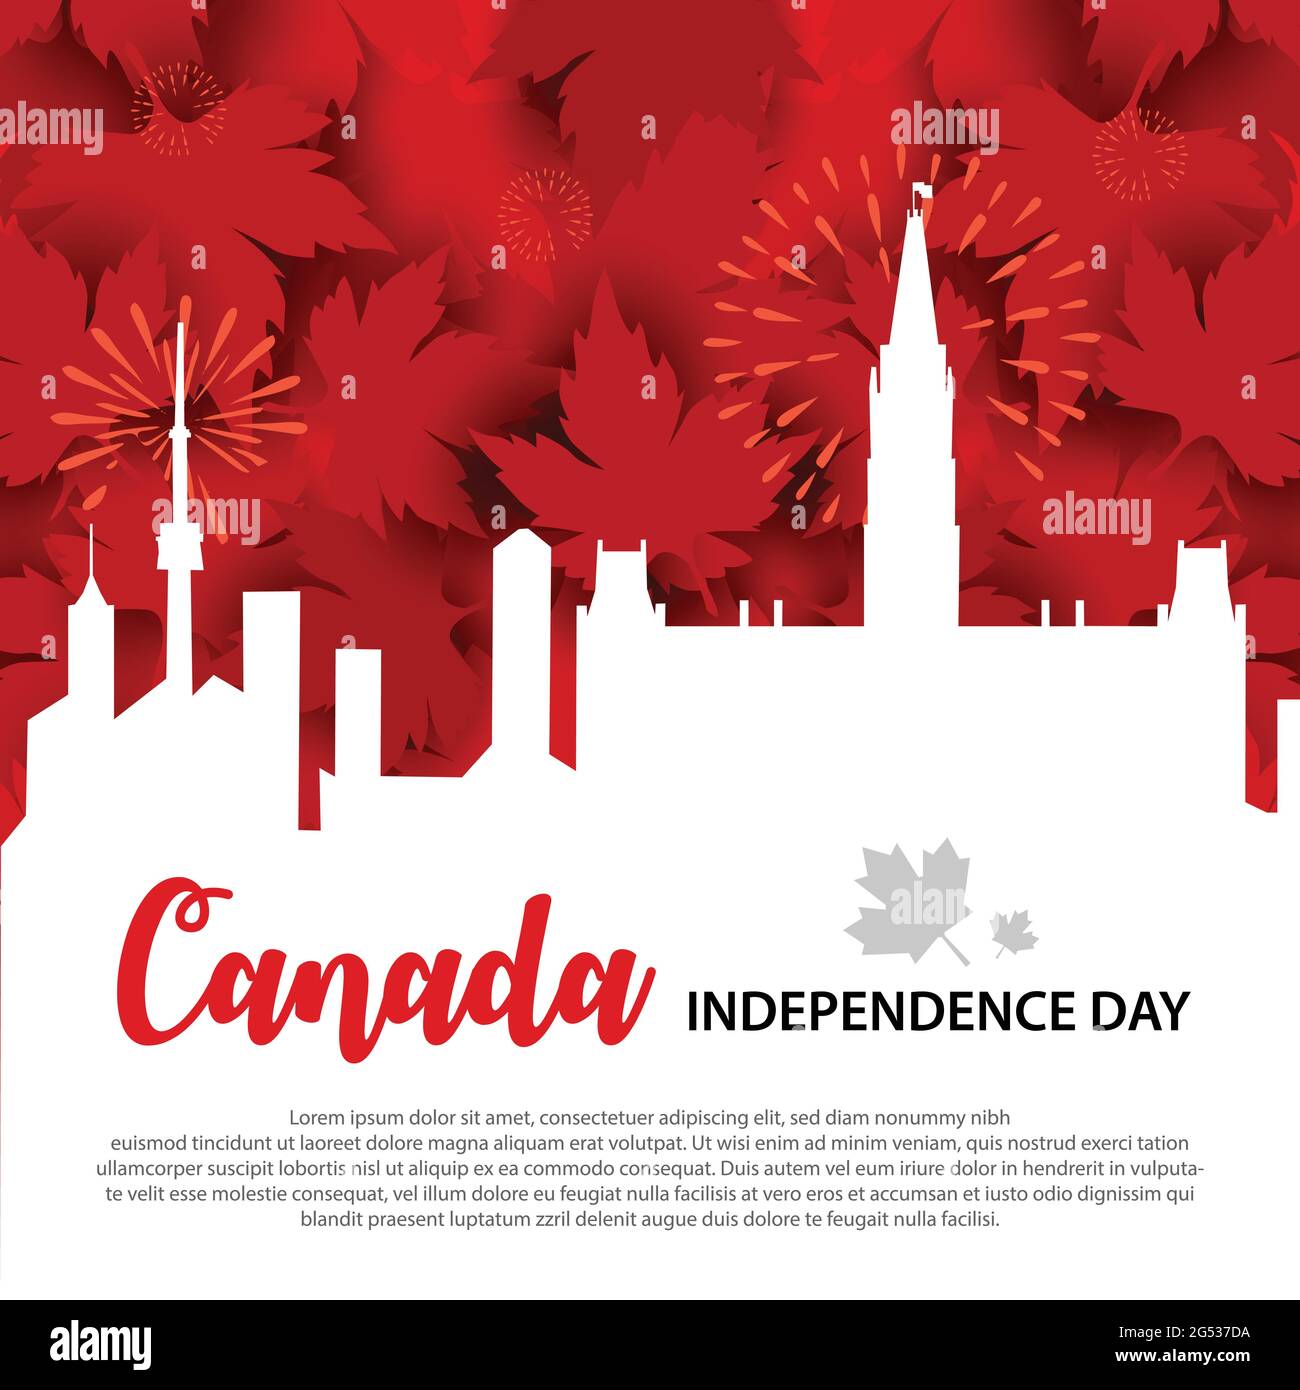 El cartel de los medios sociales del día de la independencia de Canadá ilustra sobre el fondo de la ciudad de Canadá y hojas de arce rojo, galletas saladas. Letras caligráficas o Ilustración del Vector